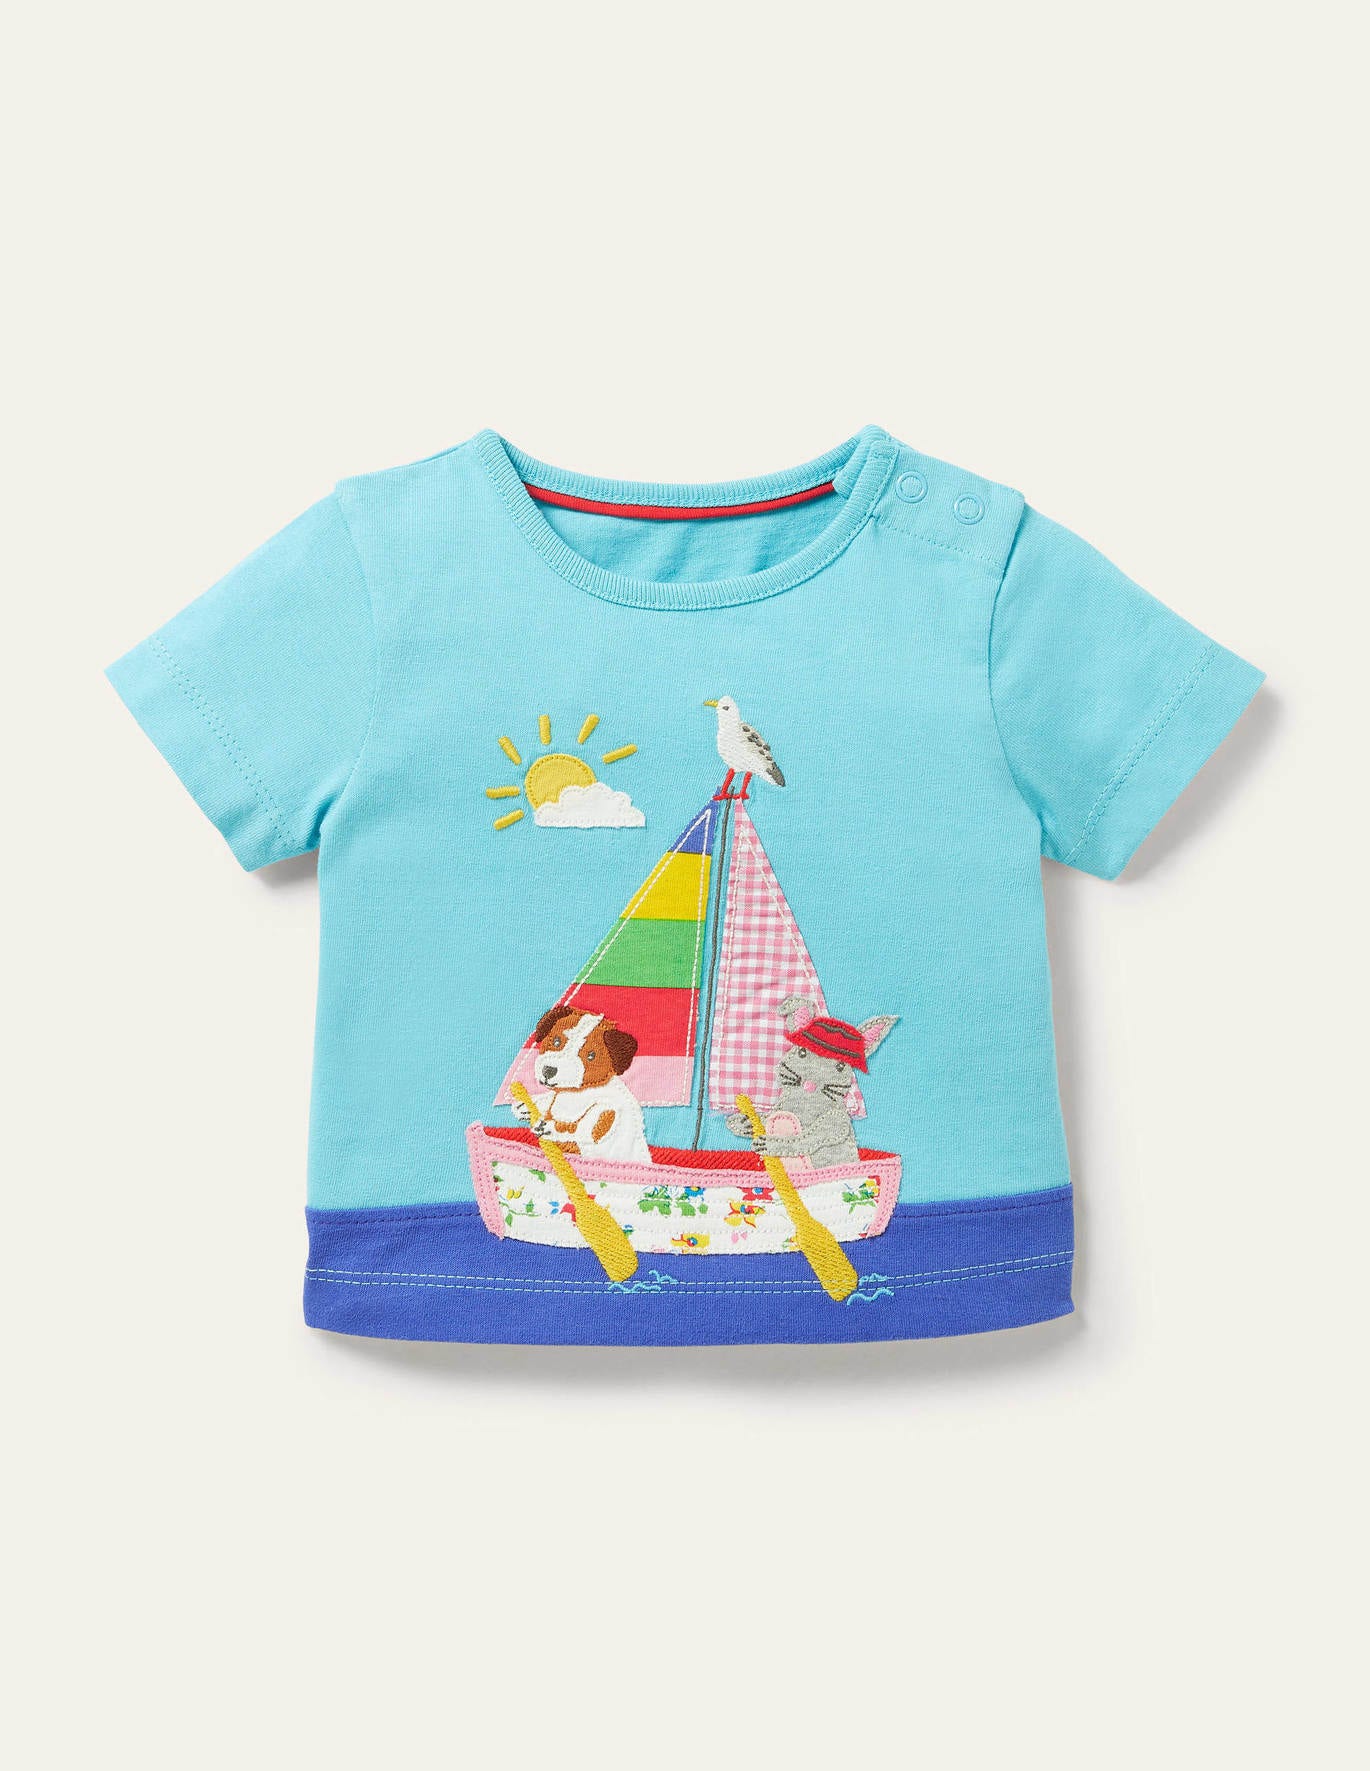 Boden Big Applique T-shirt - Aqua Boat